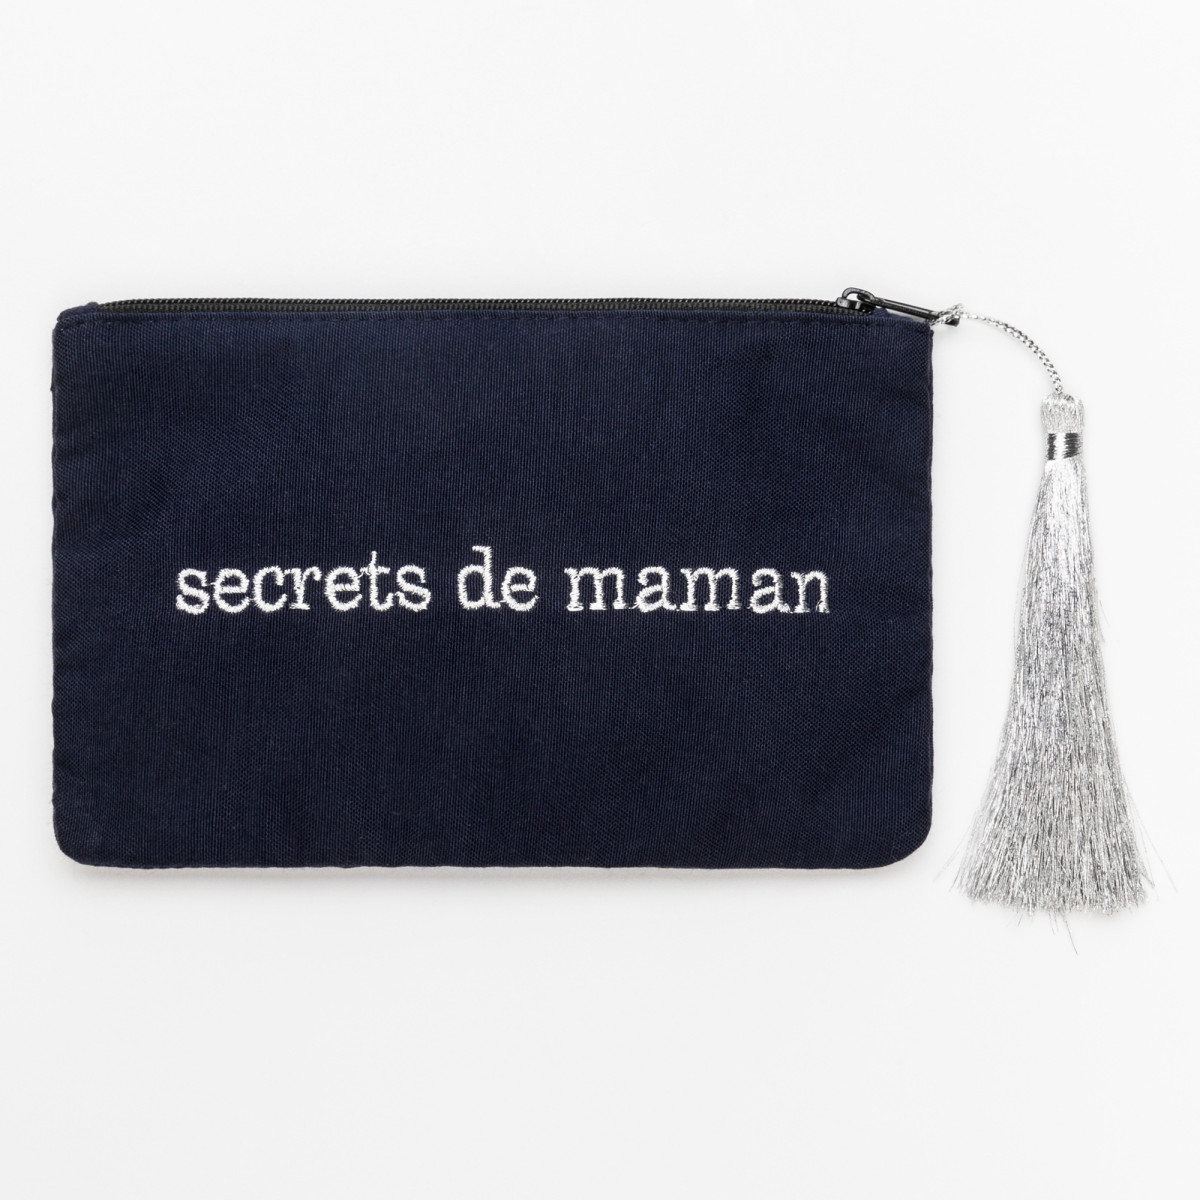 Petite pochette à message bleue marine brodée SECRETS DE MAMAN argenté